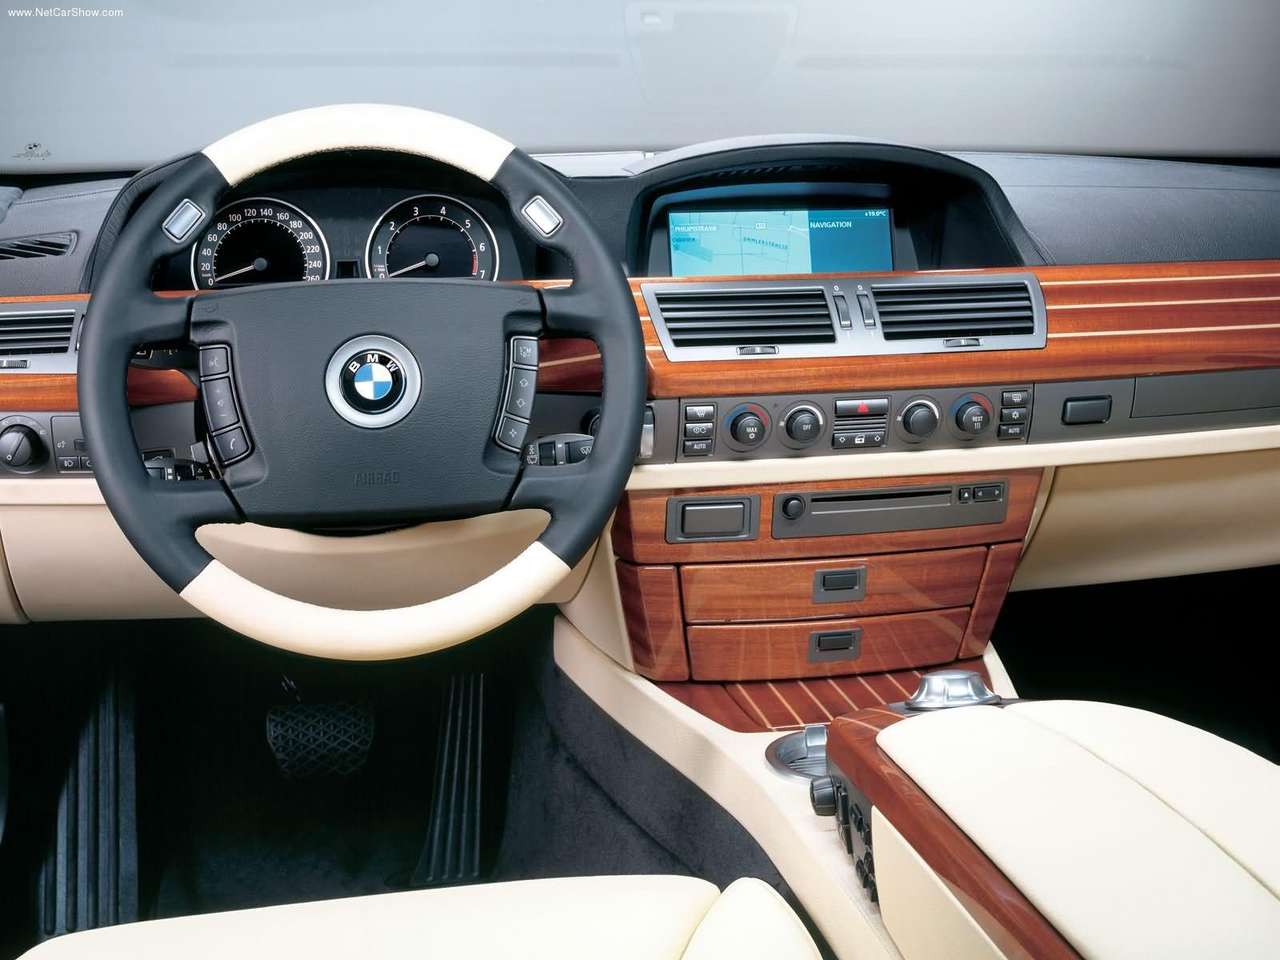 BMW - Populaire français d'automobiles: 2002 BMW 760Li Yachtline ...